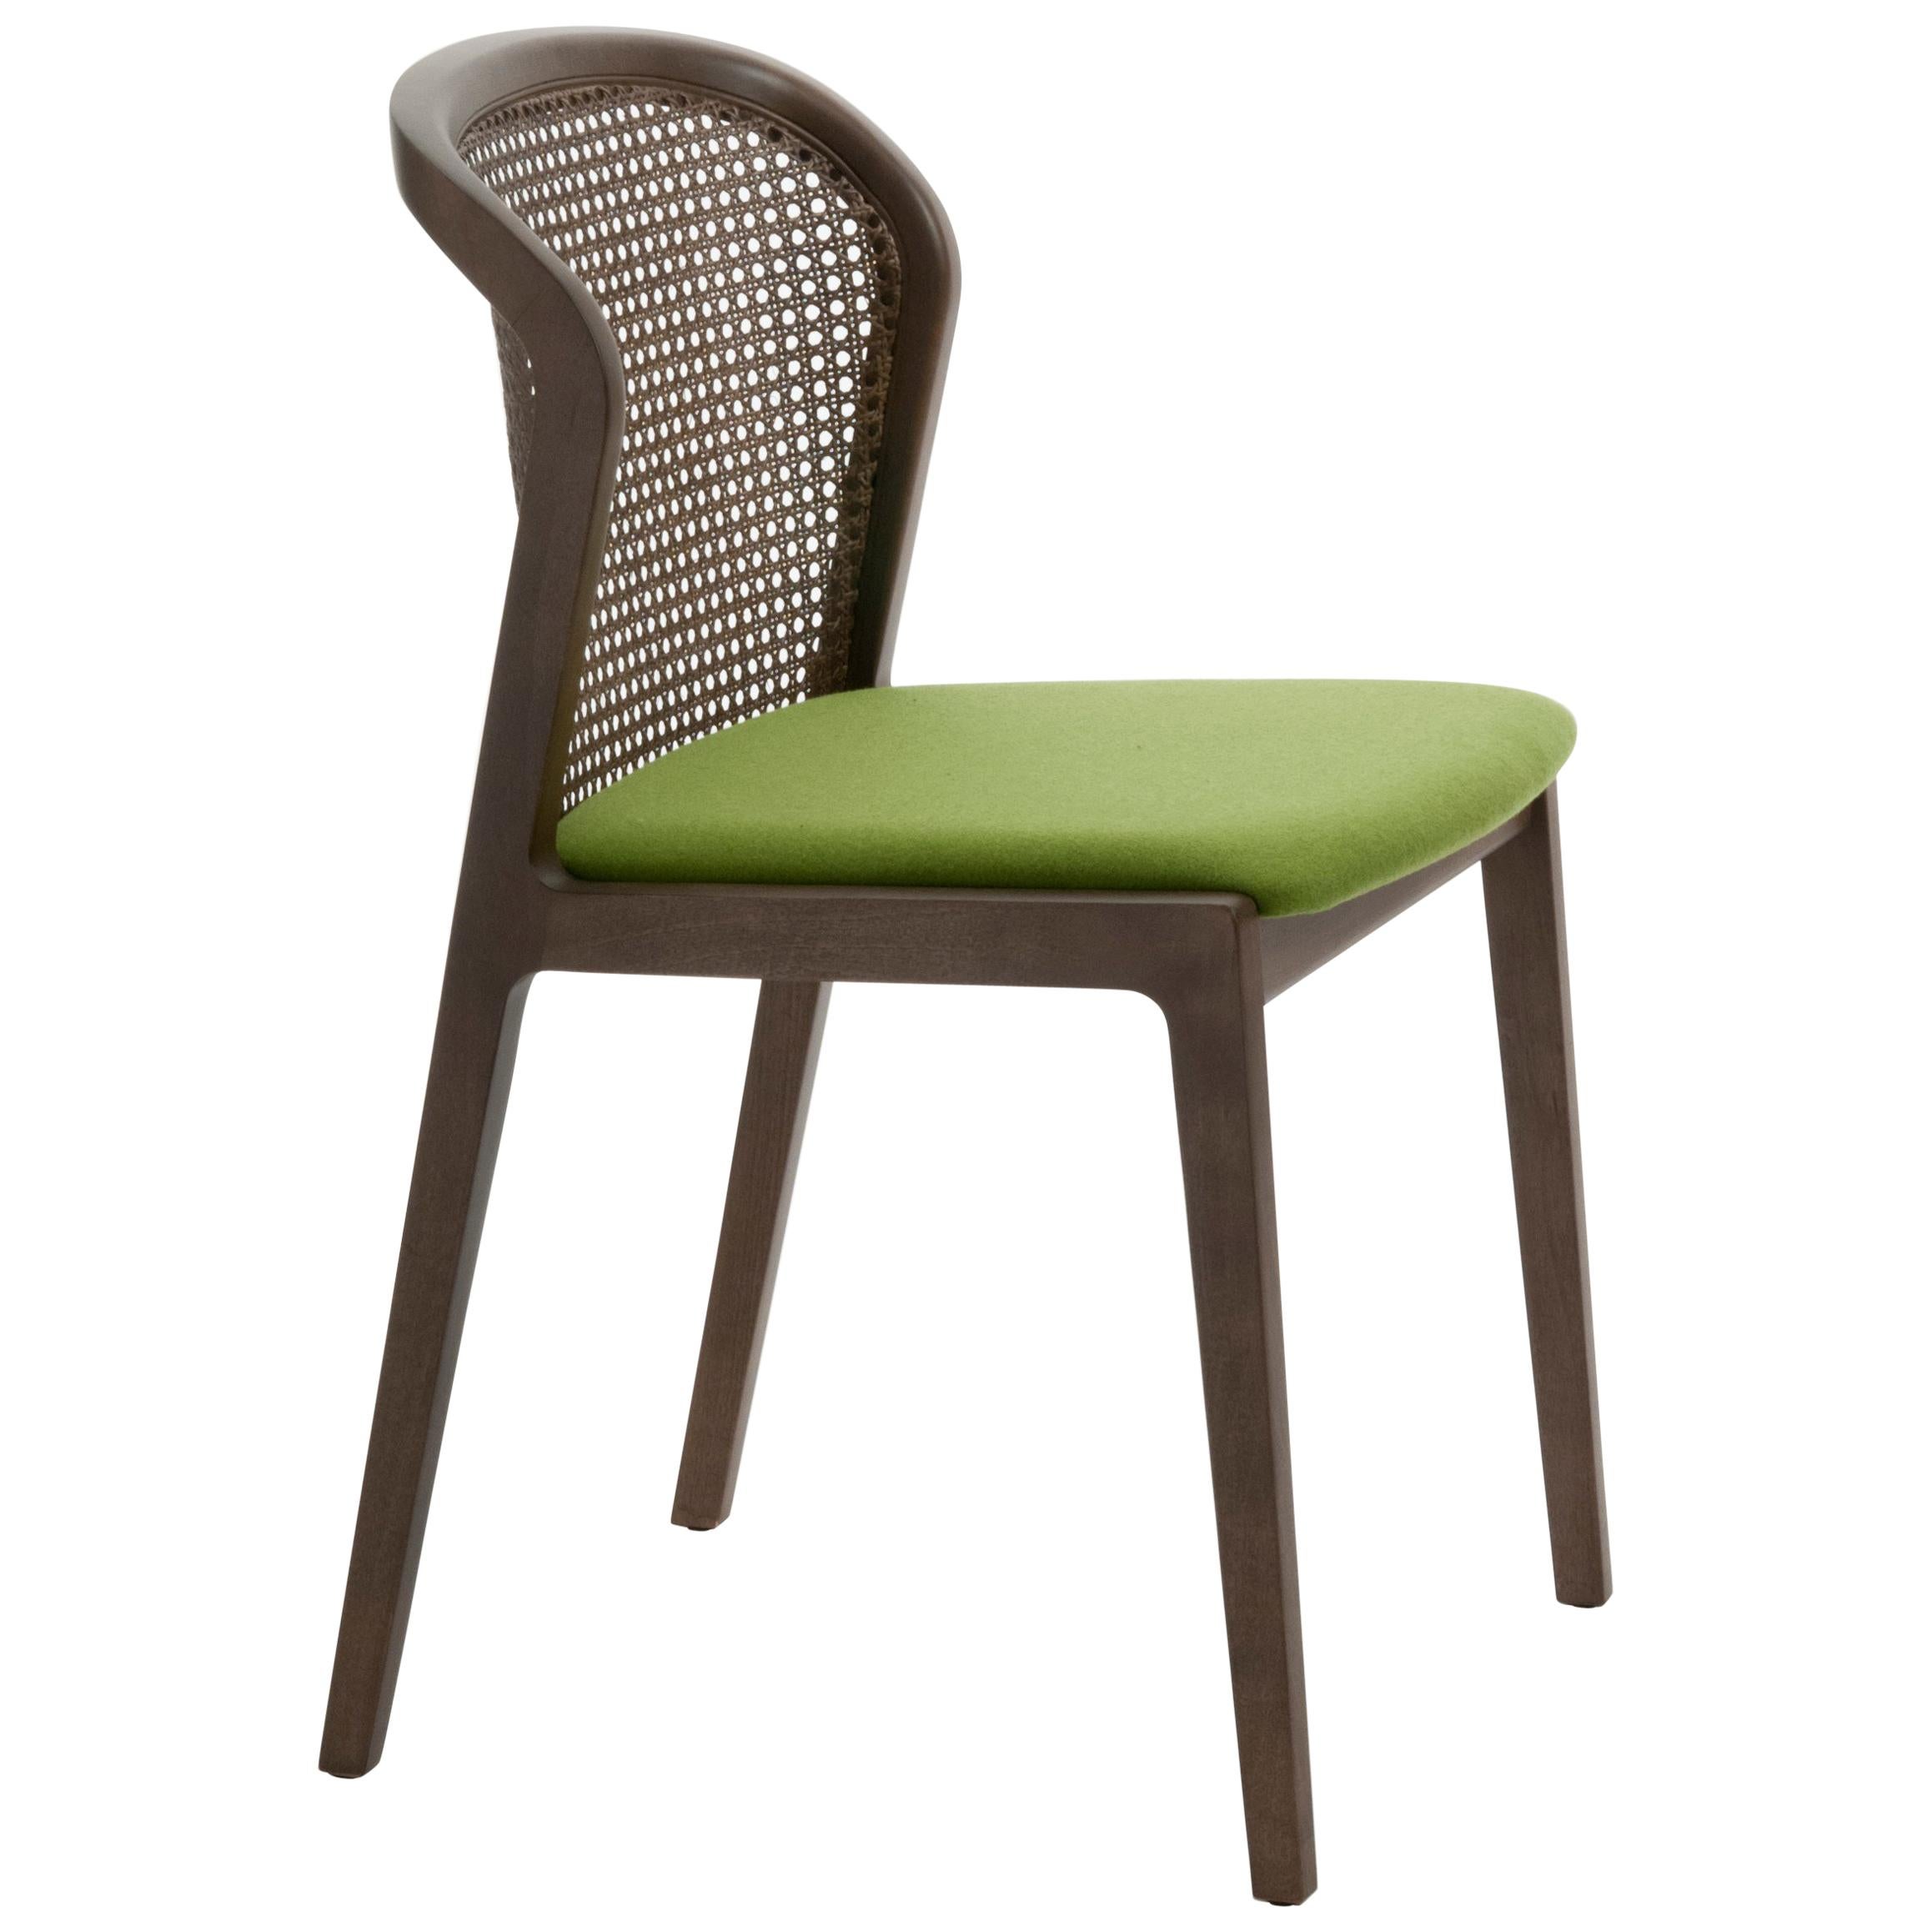 Wiener Stuhl, zeitgenössisches Design inspiriert von traditionellen Strohstühlen